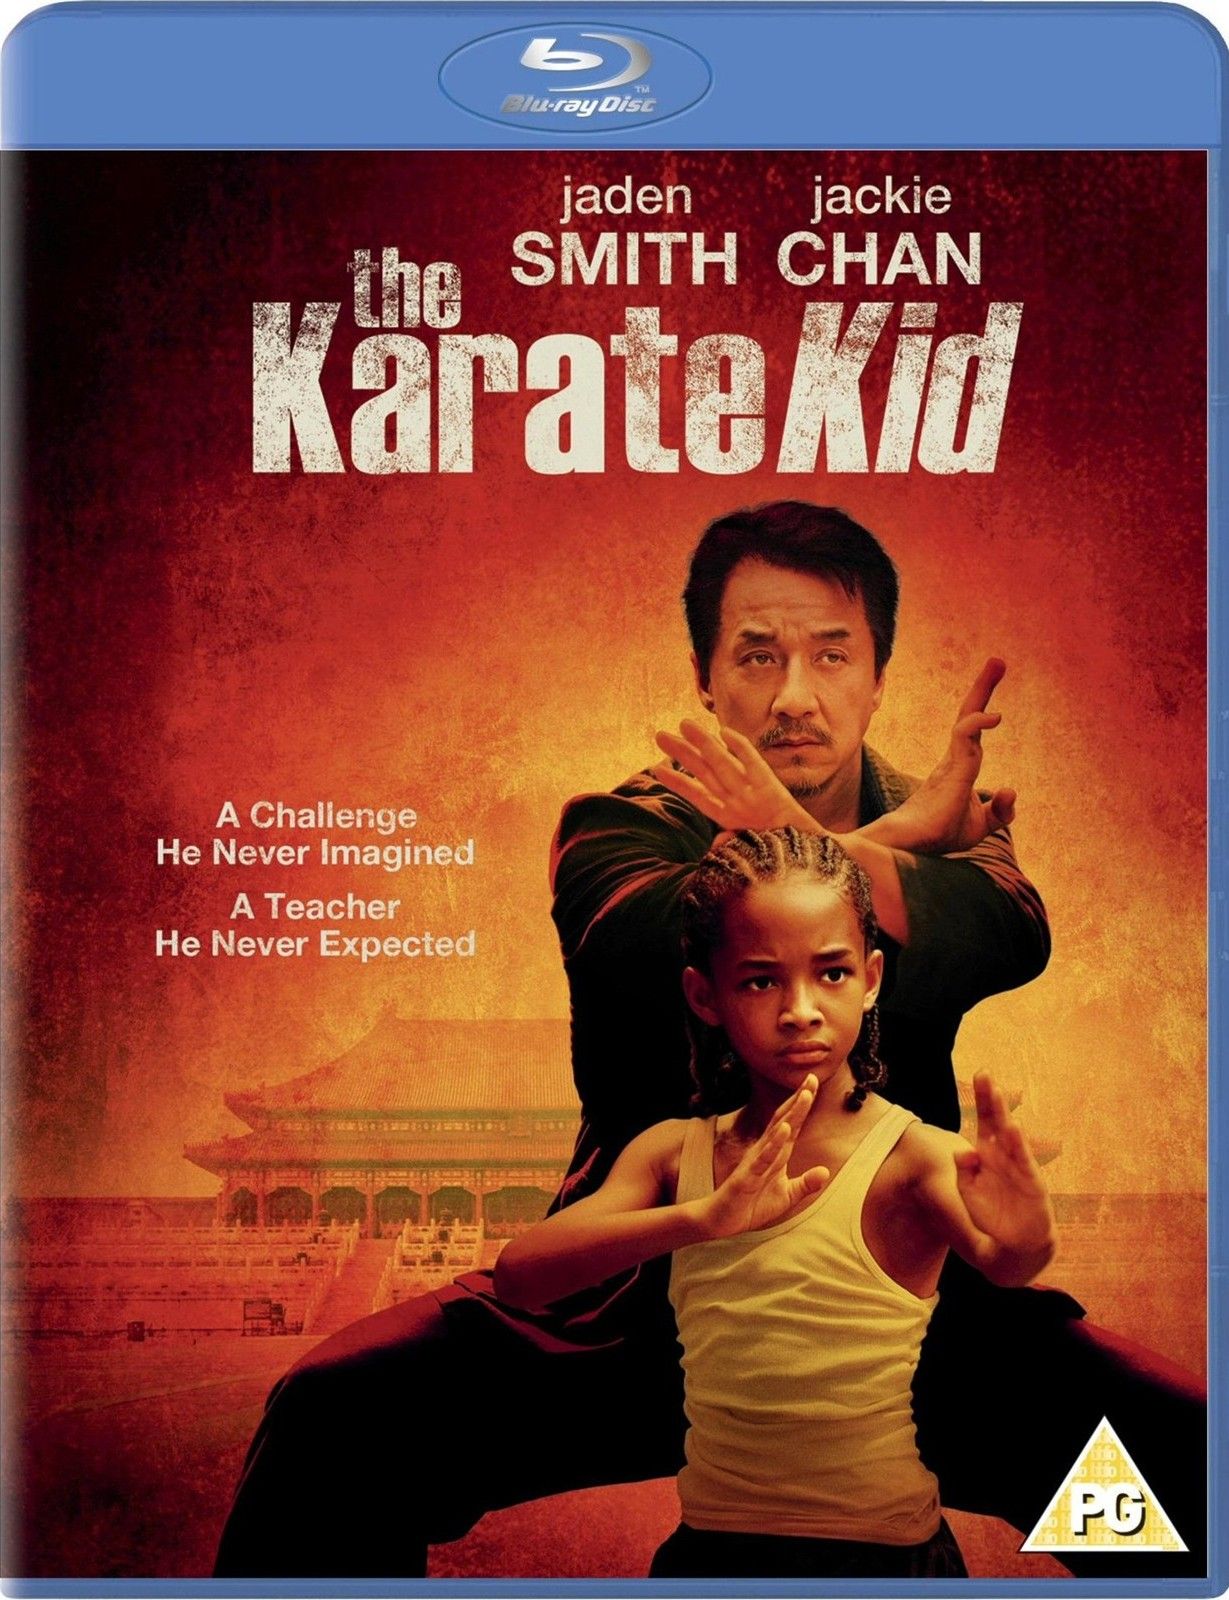 Karate kid 2010 hd online free download